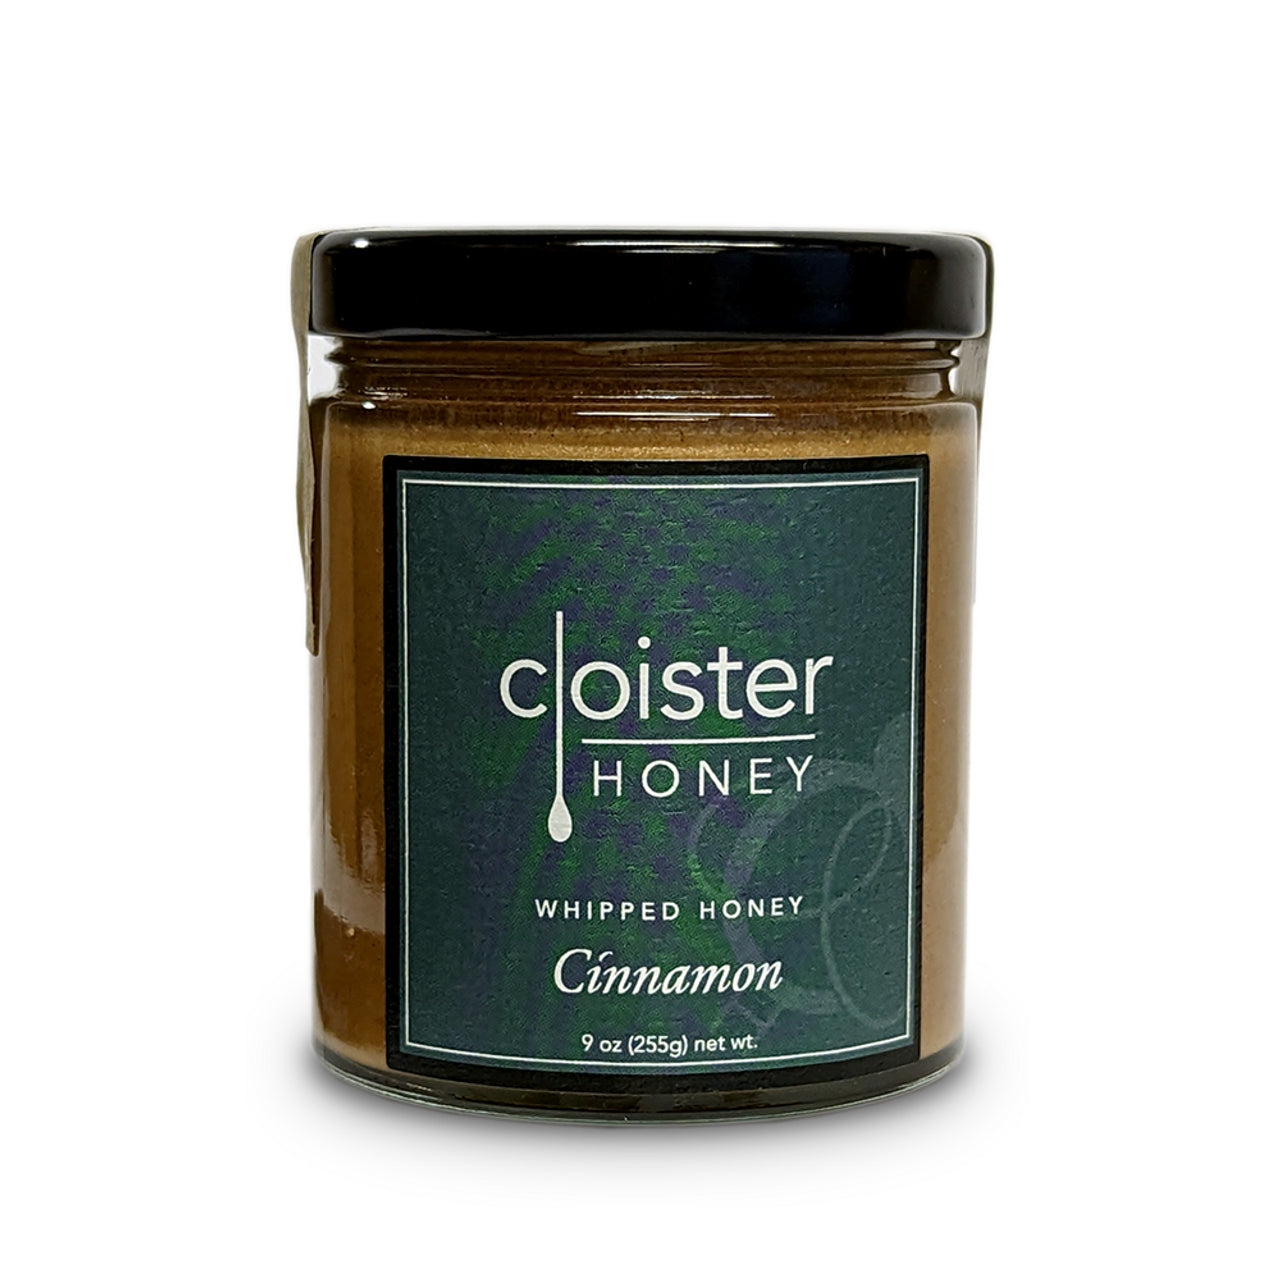 Cloister Whipped Honey- Cinnamon